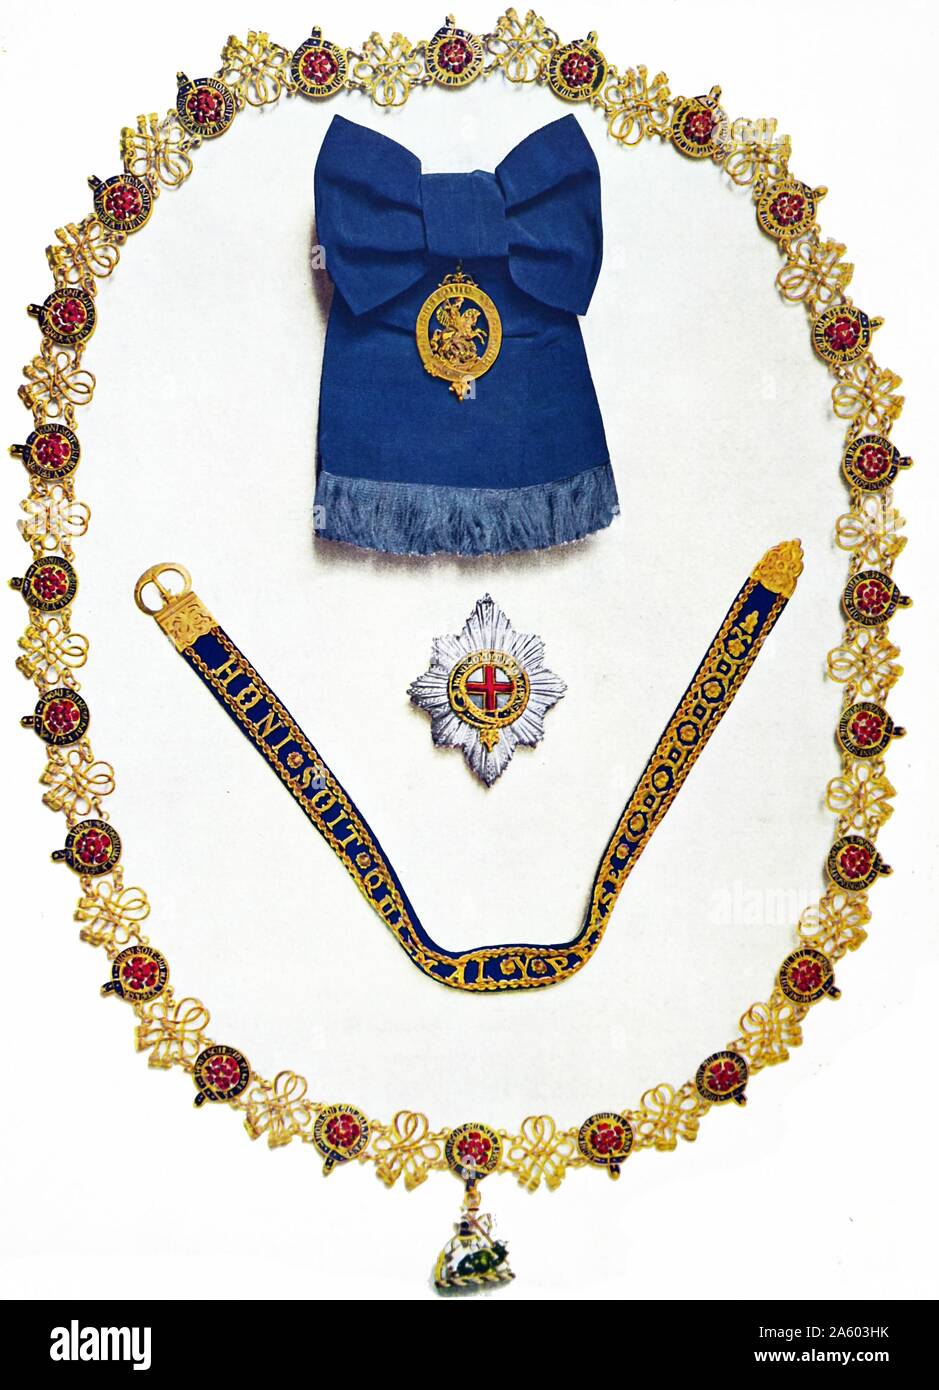 Reihenfolge der das Strumpfband und andere Krönung Aufträge Insignien getragen von König George VI bei seiner Krönung Ans britische König im Jahr 1937 Stockfoto